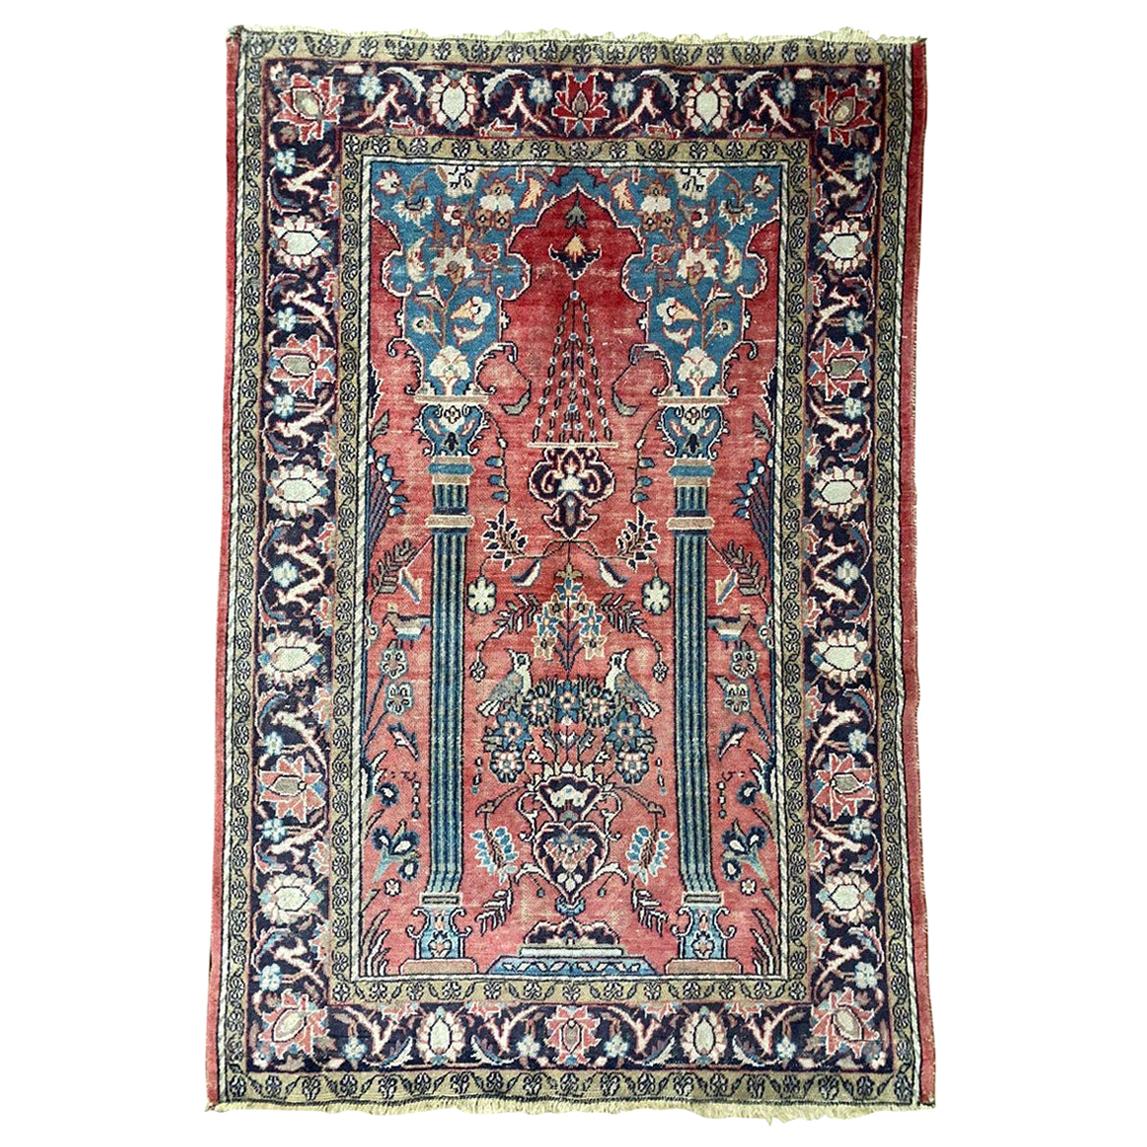 Schöner Vintage-Teppich mit orientalischem Design